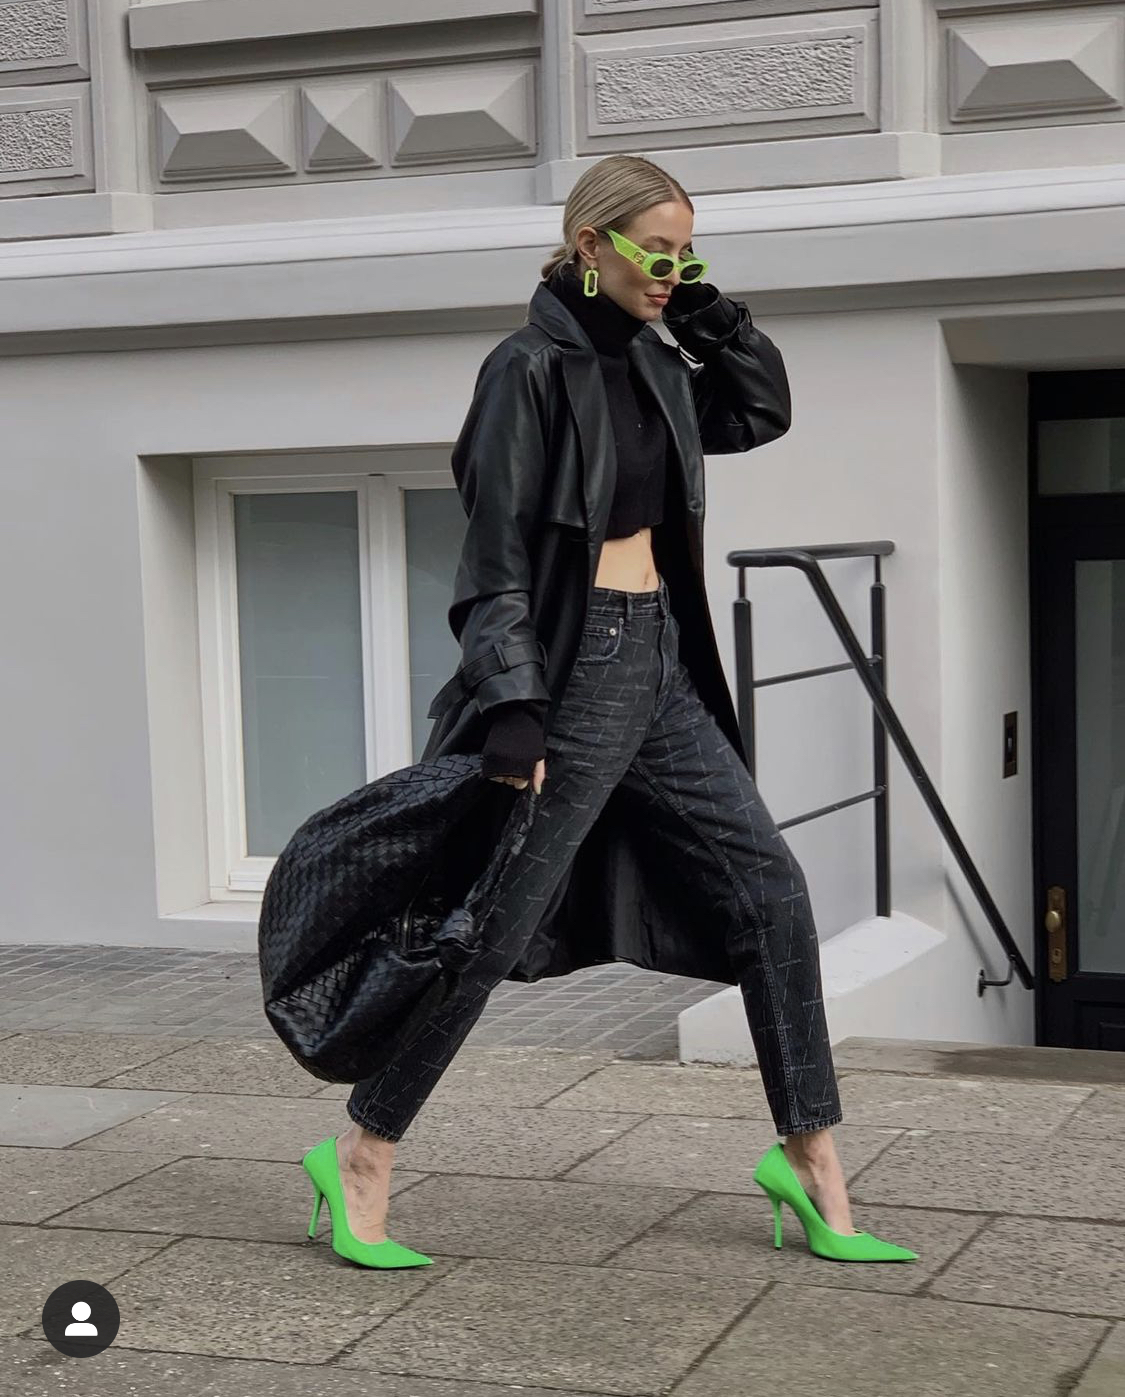 Diện cây đen từ áo croptop, trench coat đến quần, Leonie Hanne vẫn tạo sự ấn tượng với đôi cao gót lẫn kính mát màu xanh lá.